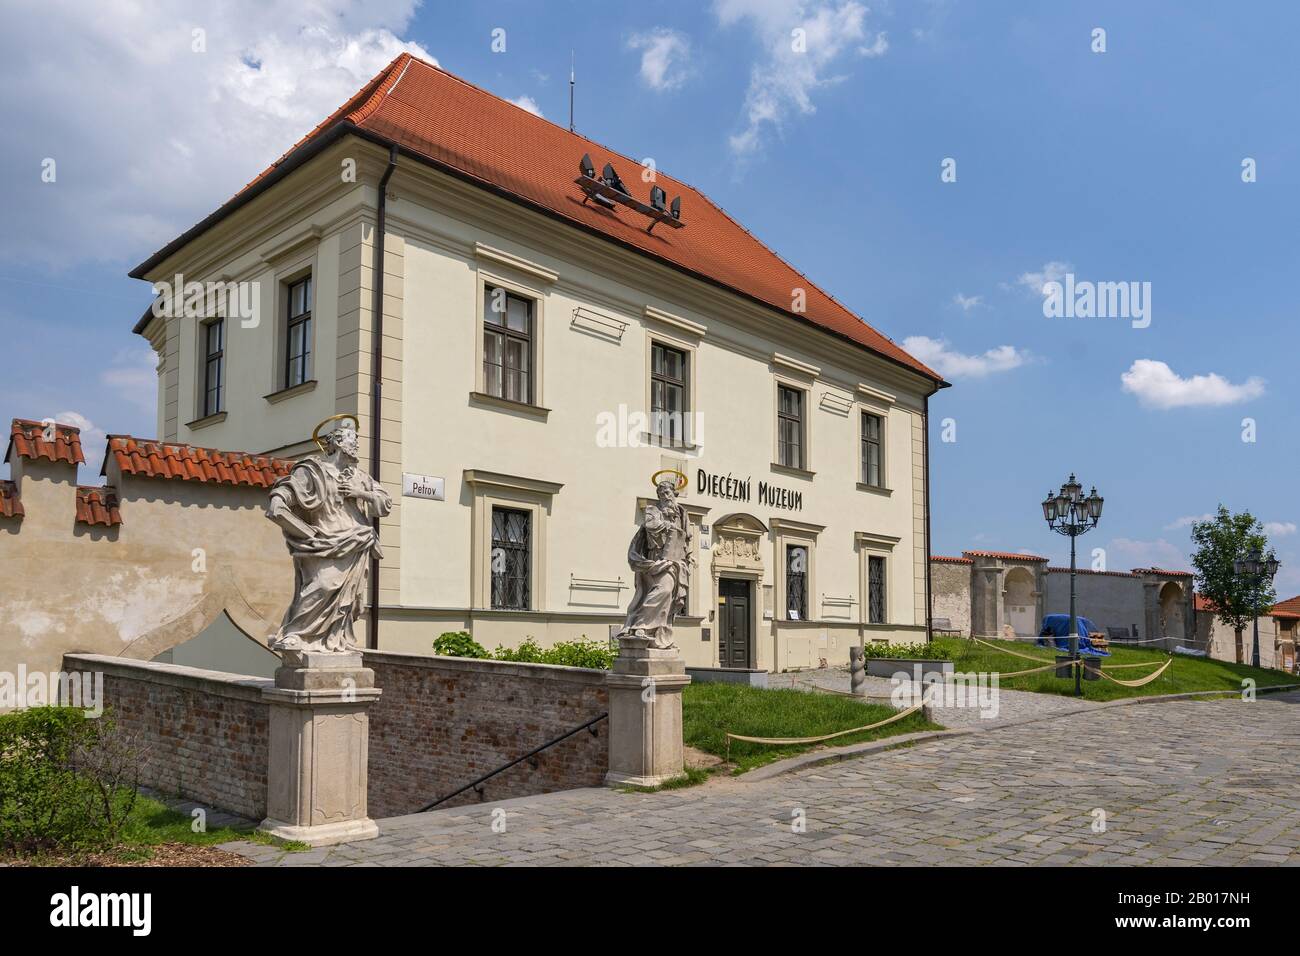 Centre historique de la métropole morave de Brno avec le bâtiment du Musée diocésain, République tchèque. Banque D'Images